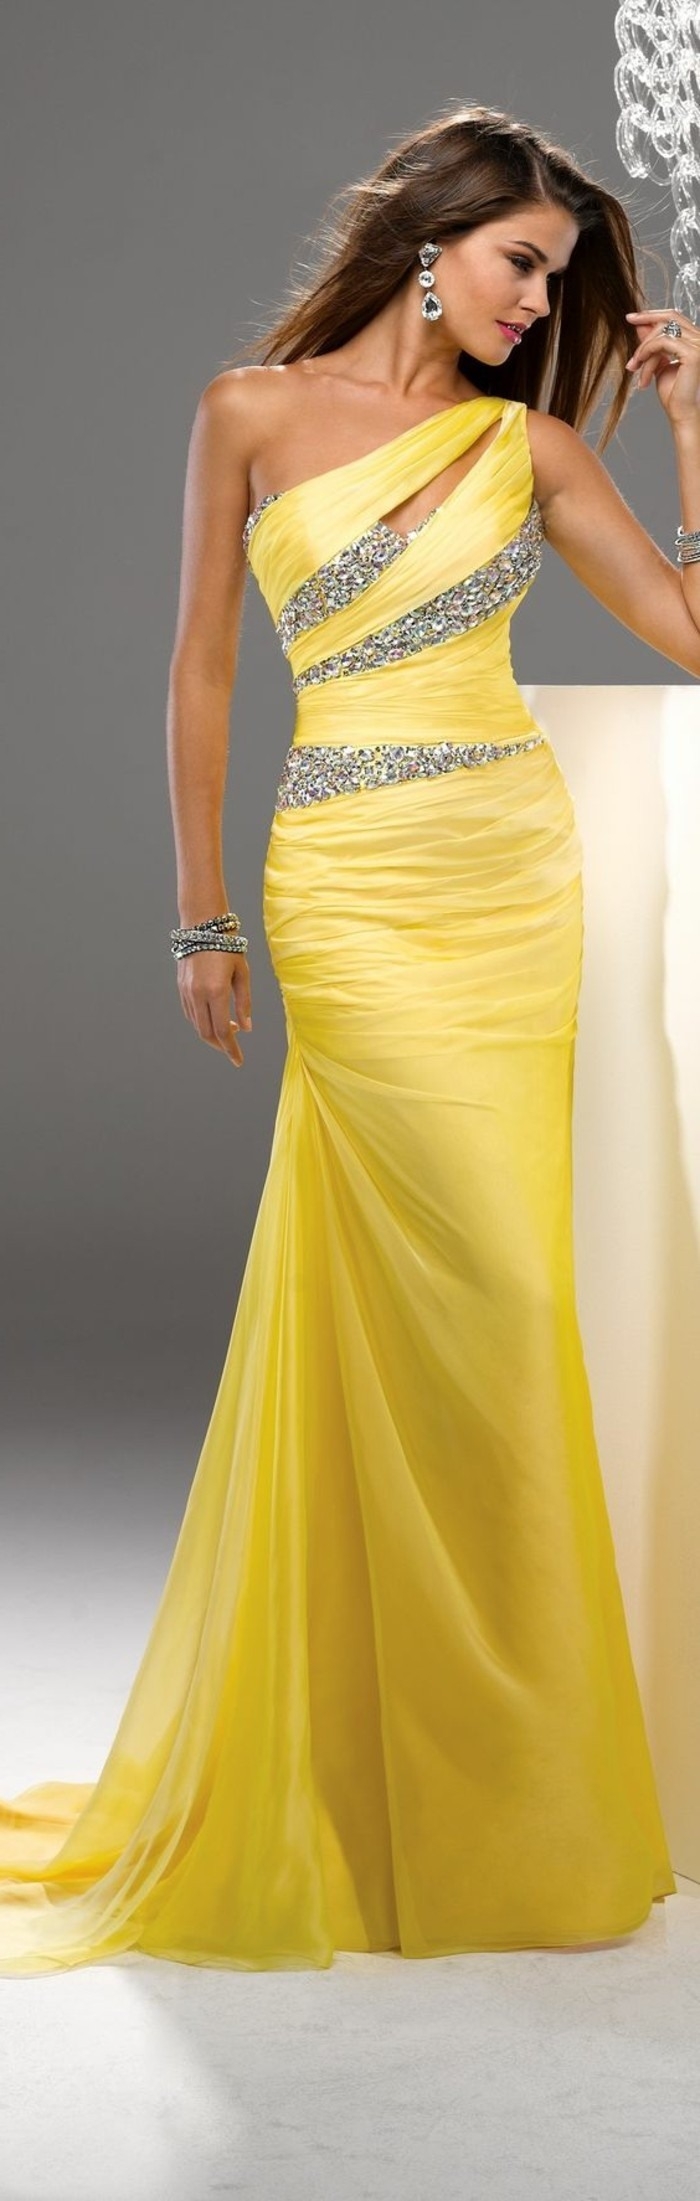 15 Einfach Gelbes Festliches Kleid Galerie10 Spektakulär Gelbes Festliches Kleid Boutique